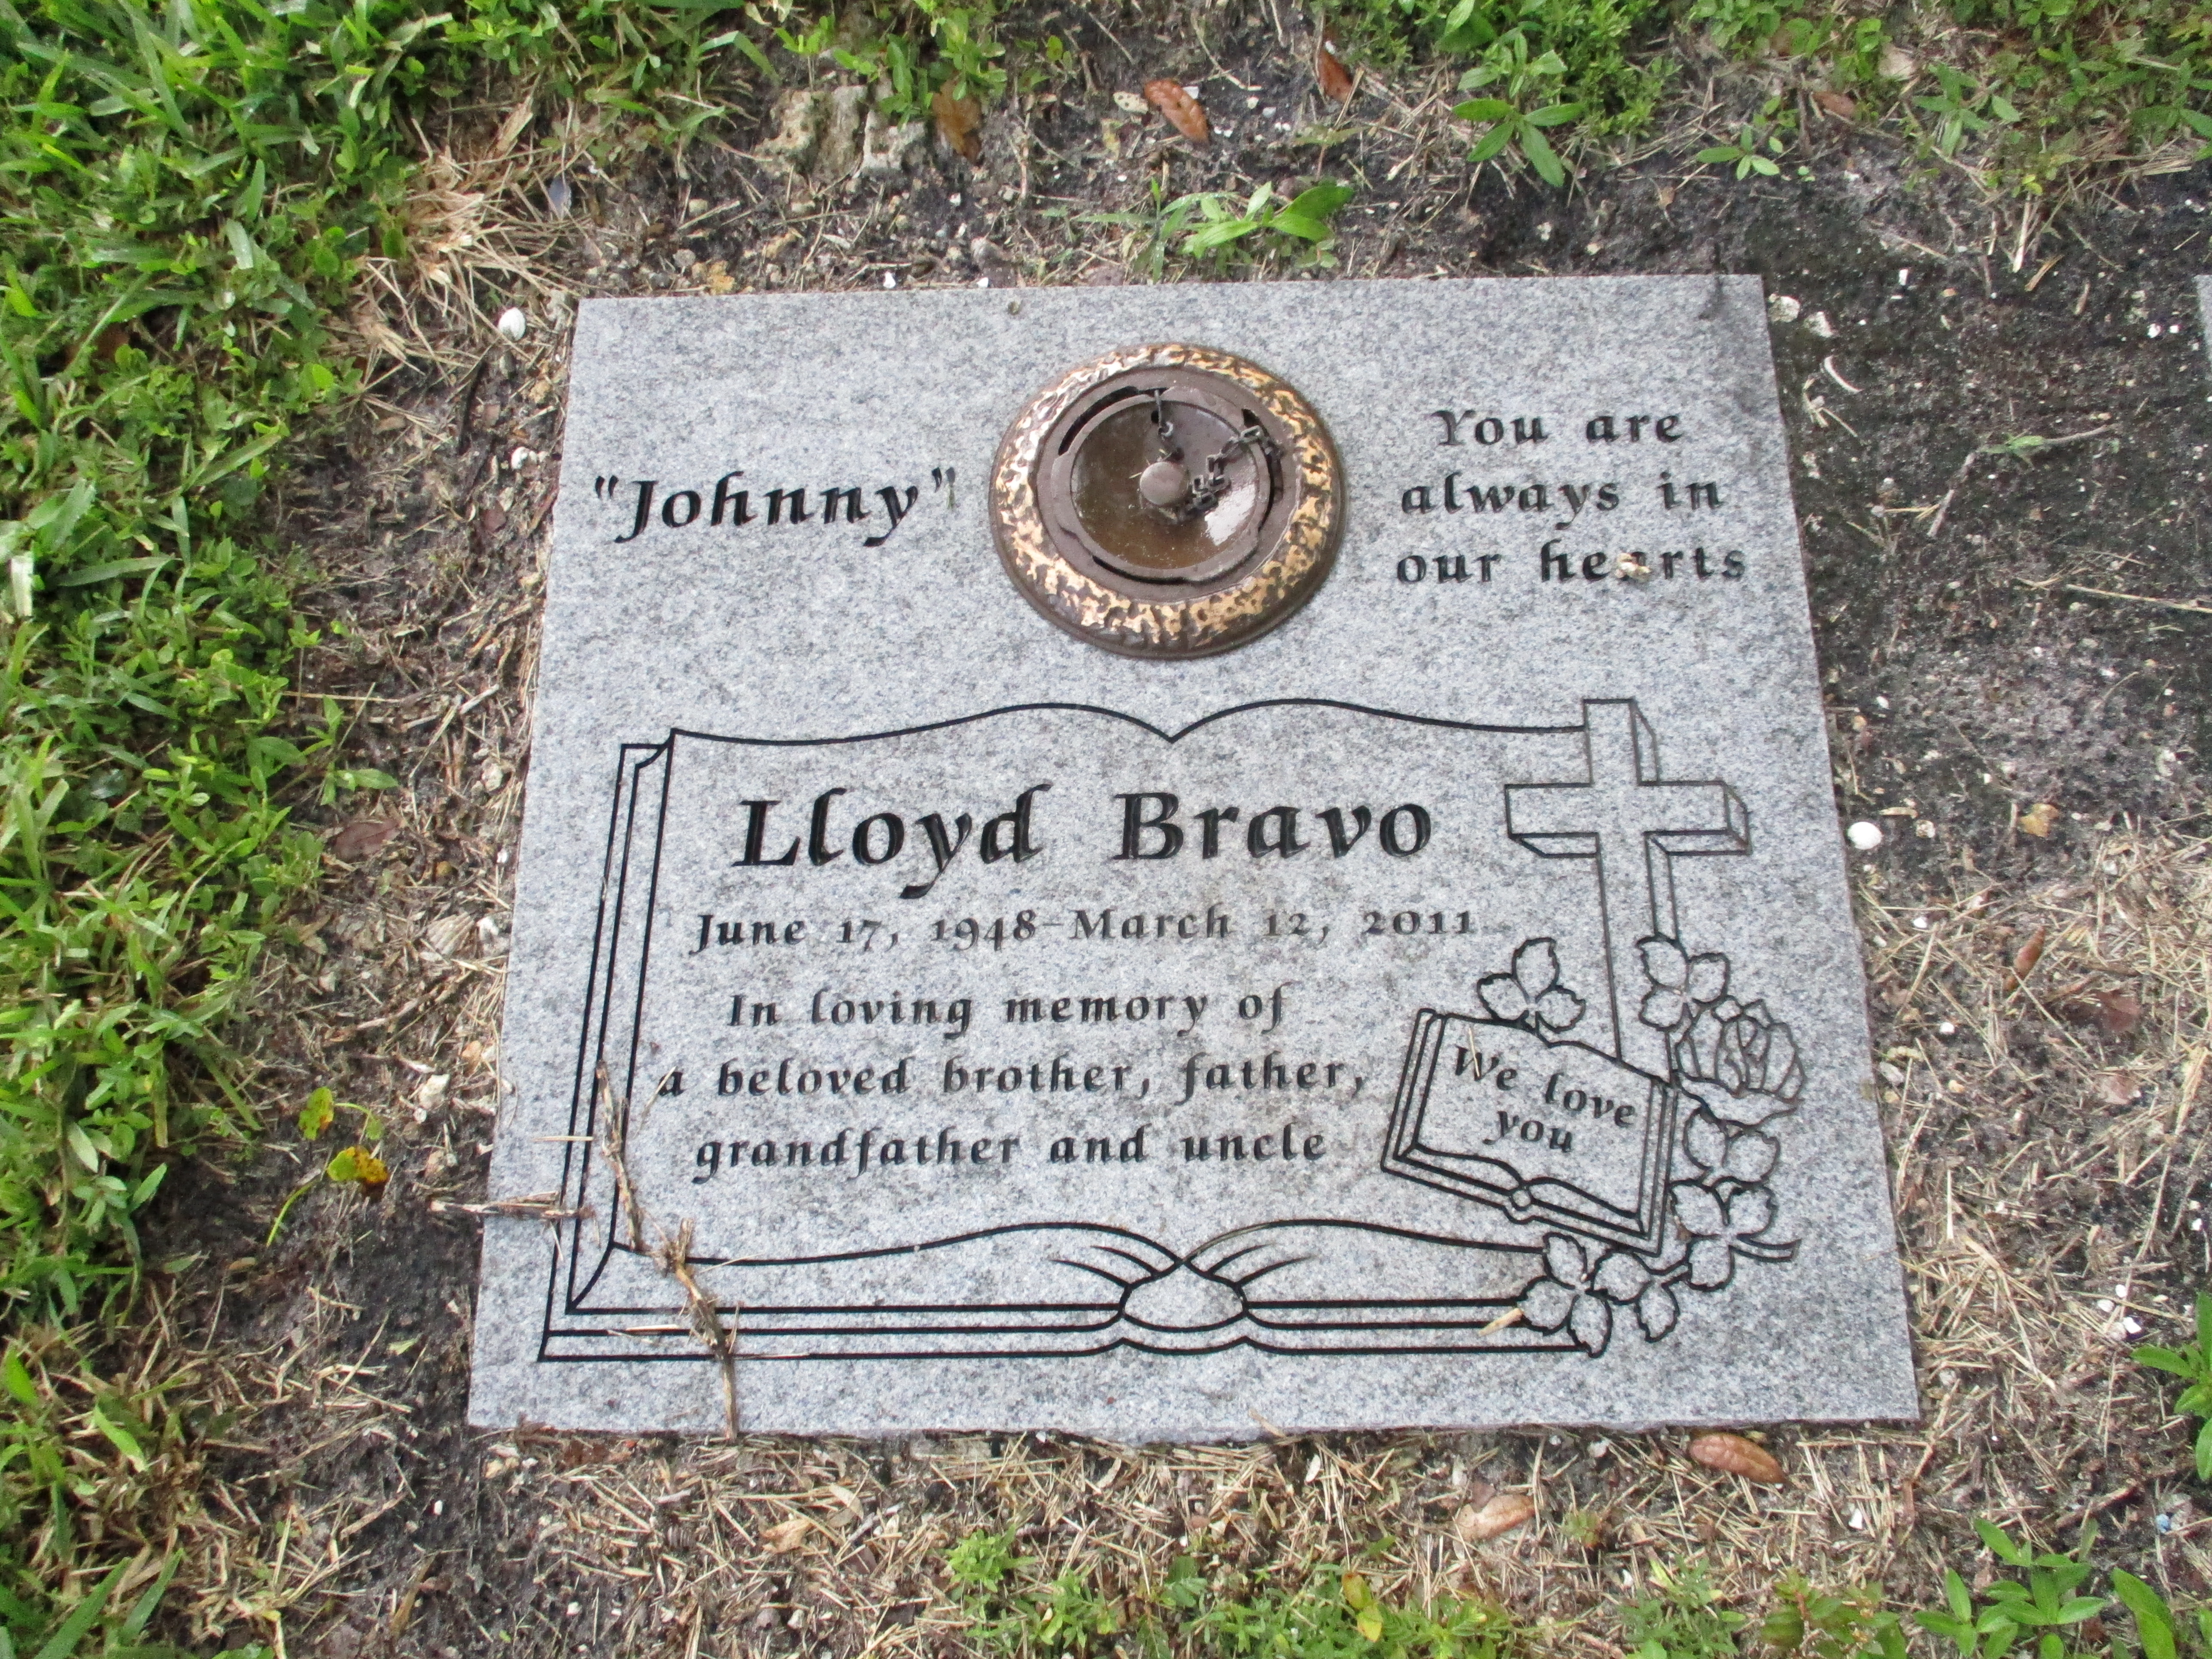 Lloyd "Johnny" Bravo